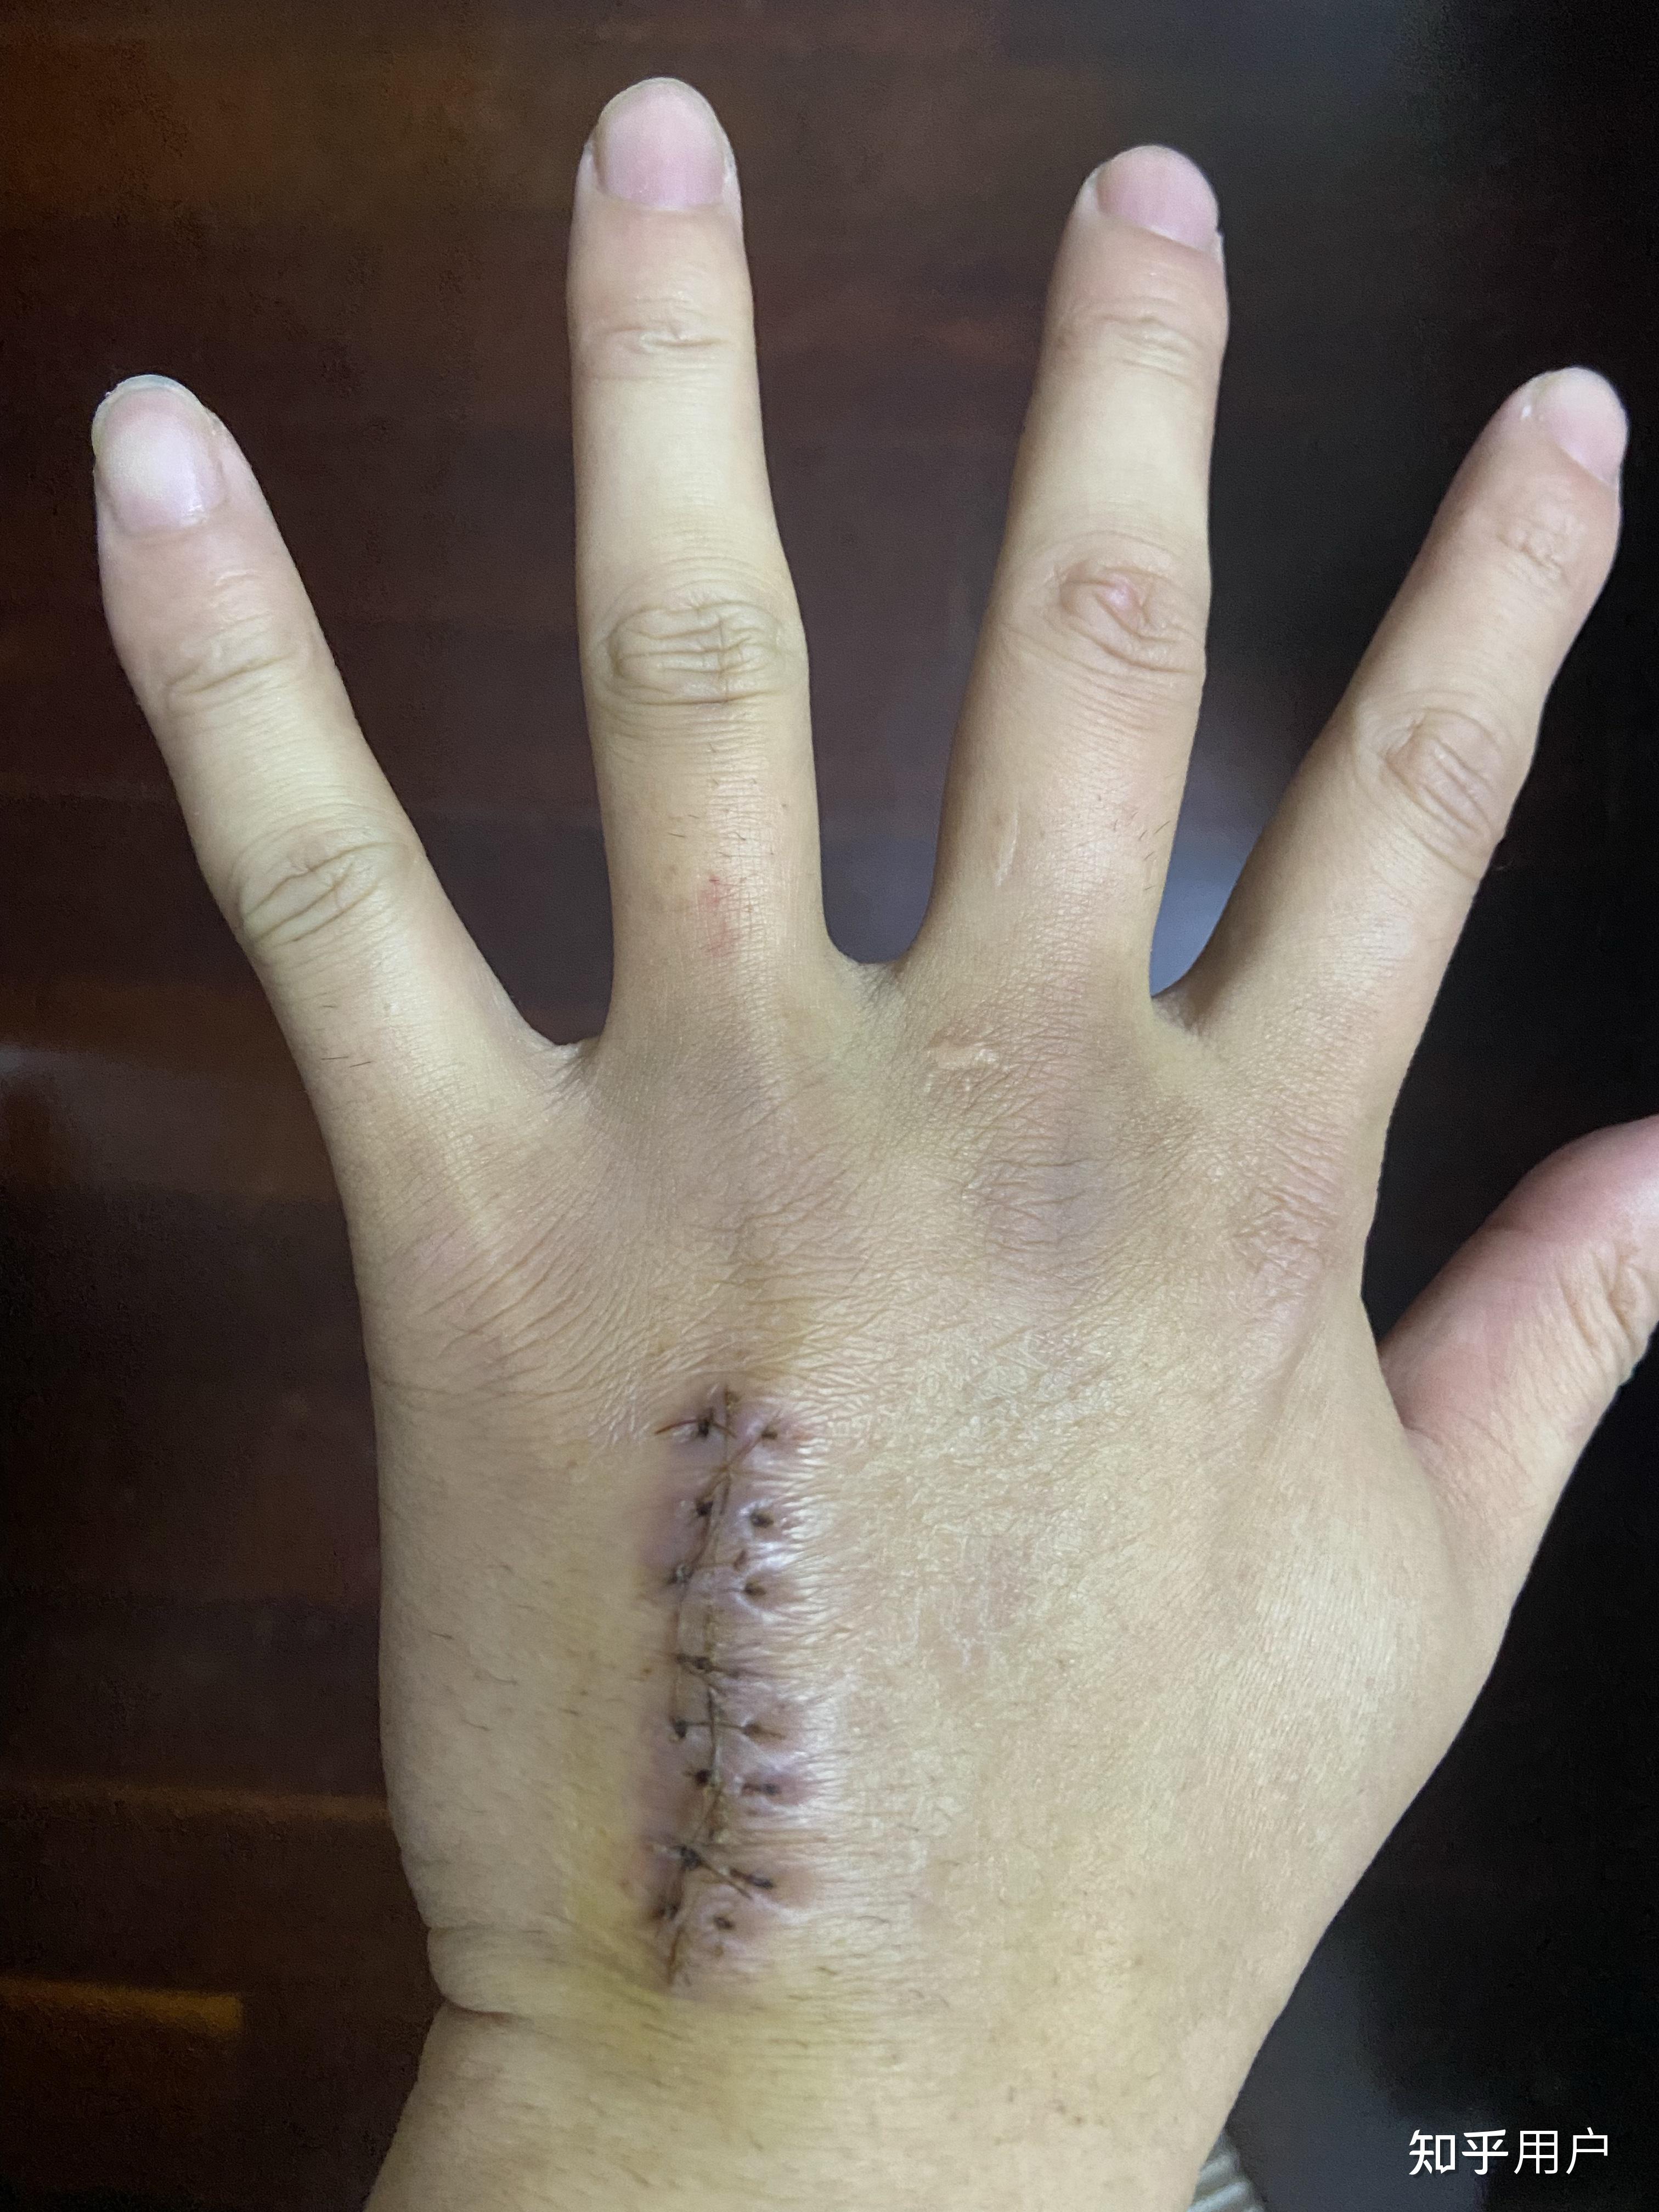 右手第四掌骨骨折保守治疗的第16天恢复的是否不太理想